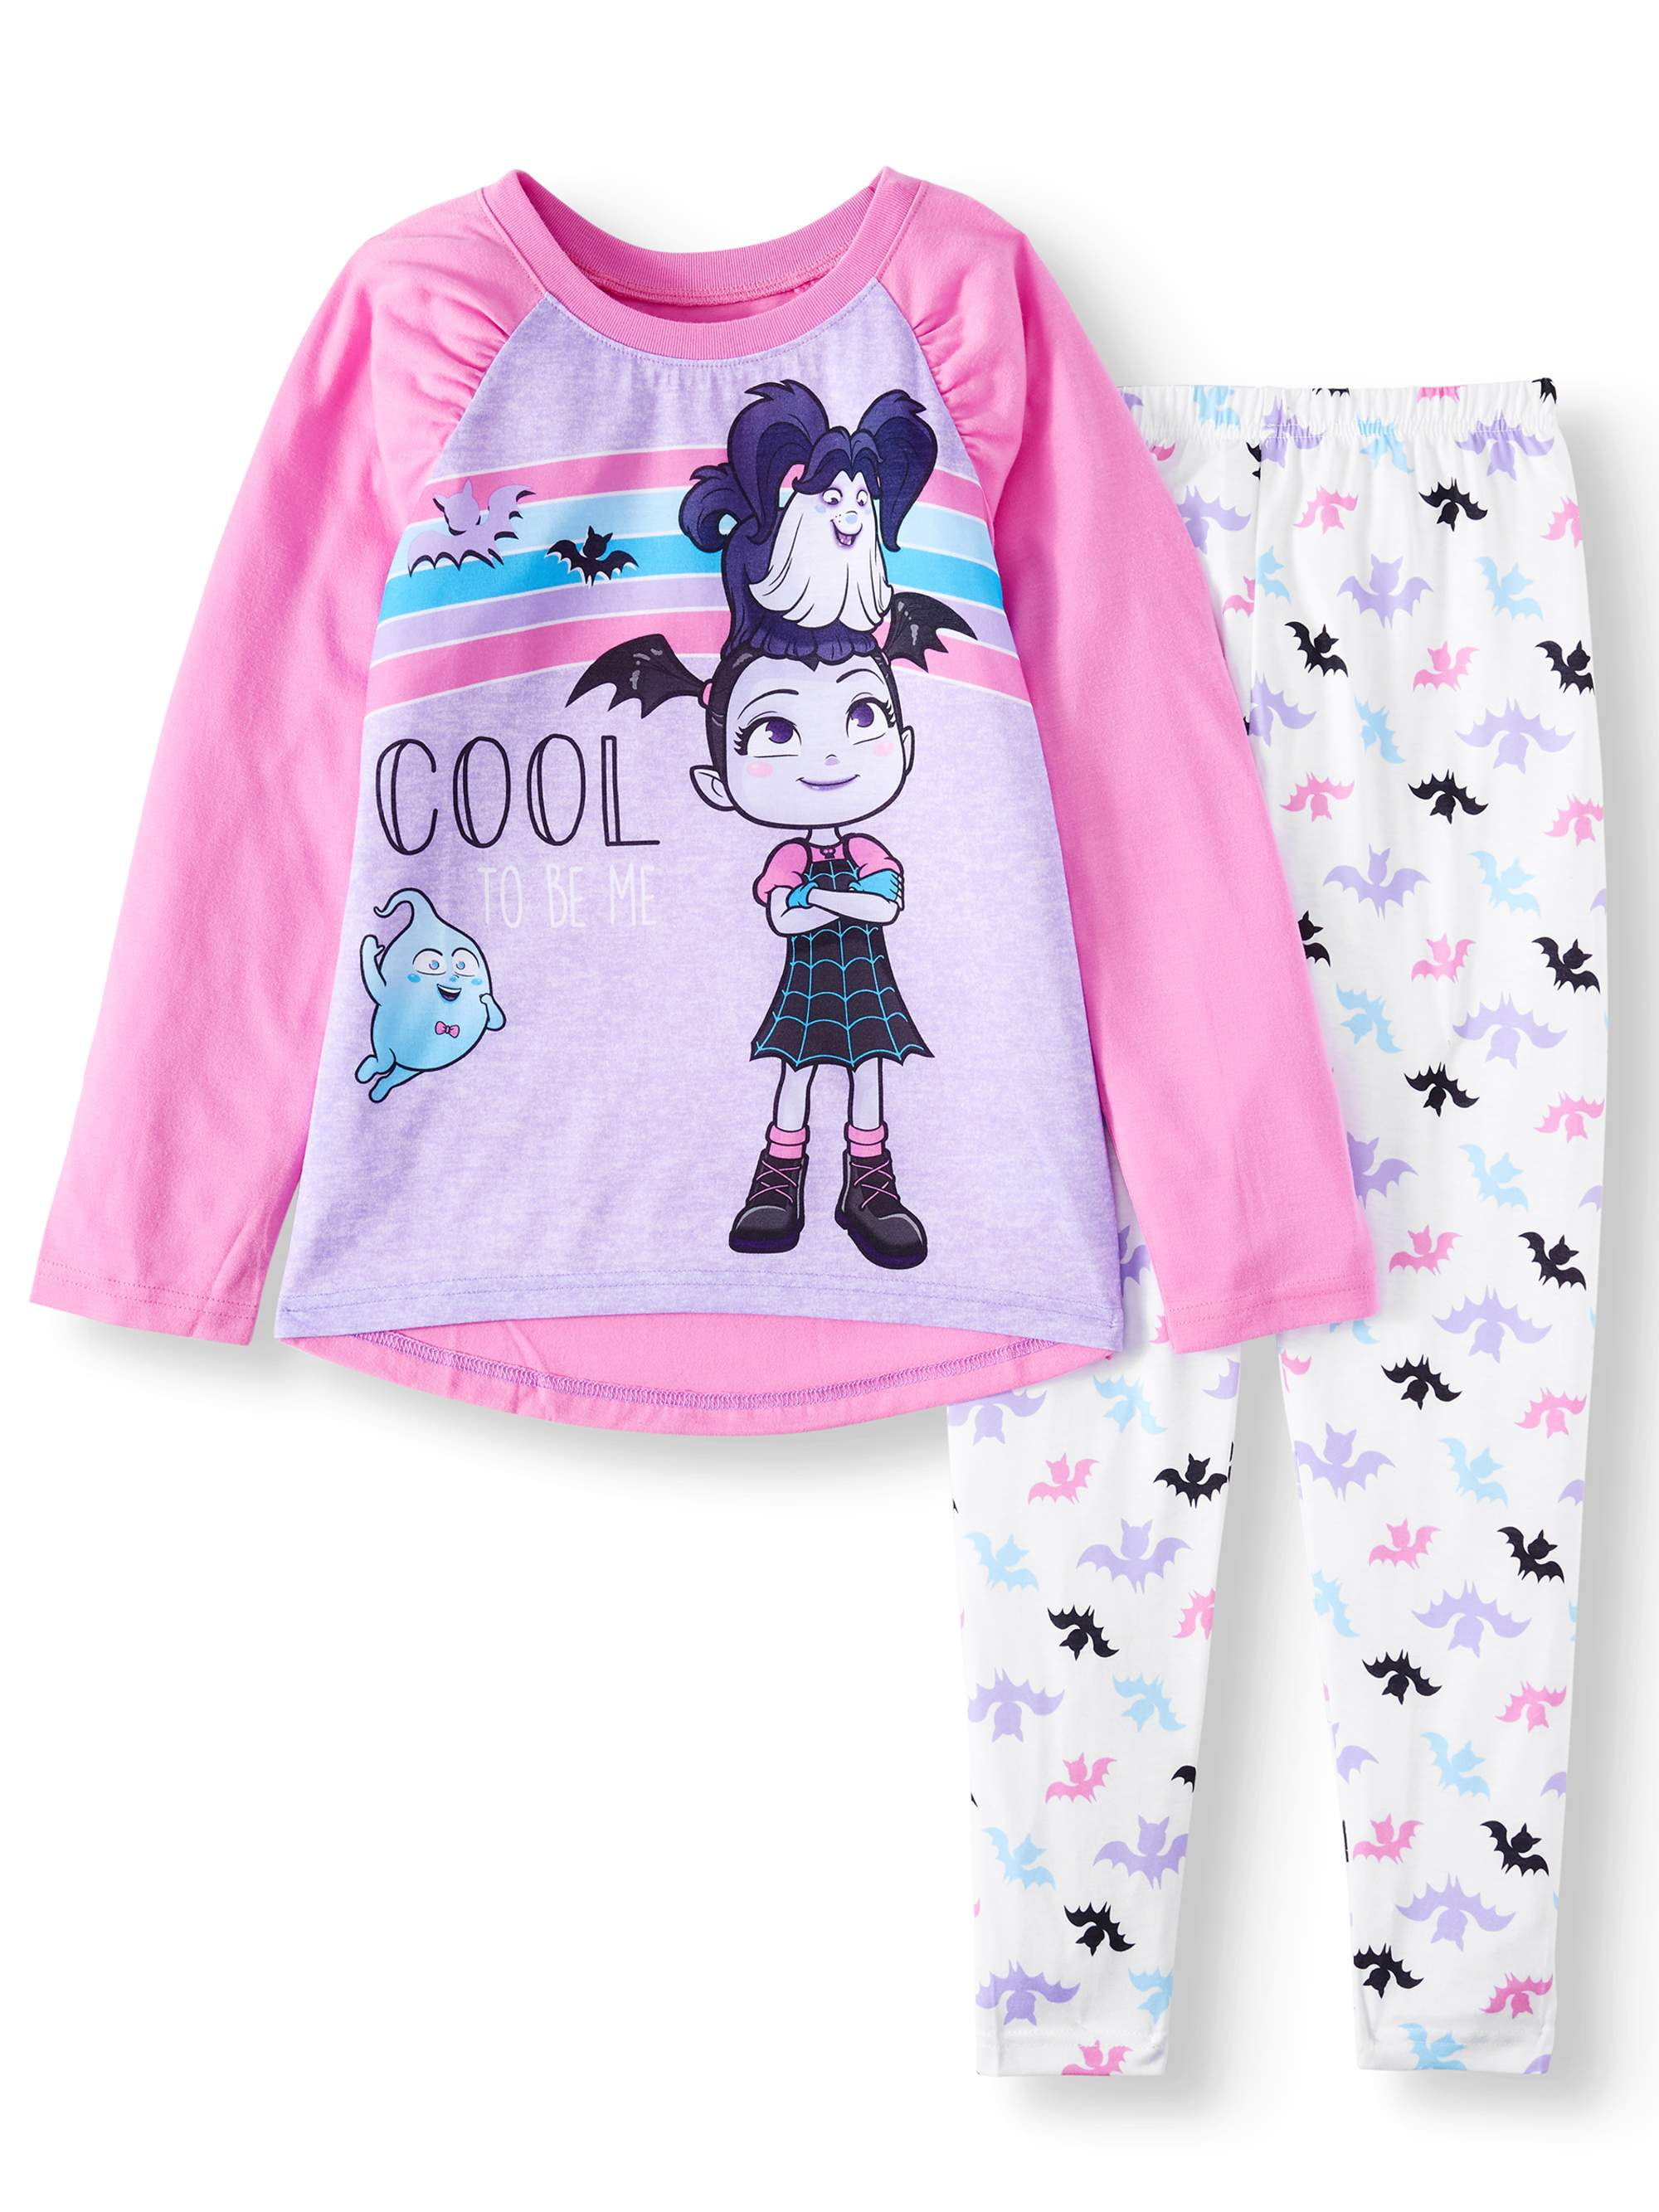 Details about   Vampirina Toddler Girls 3 Pc Pajama Set  NWT  Ghoul Girls Rock  Size  3T 